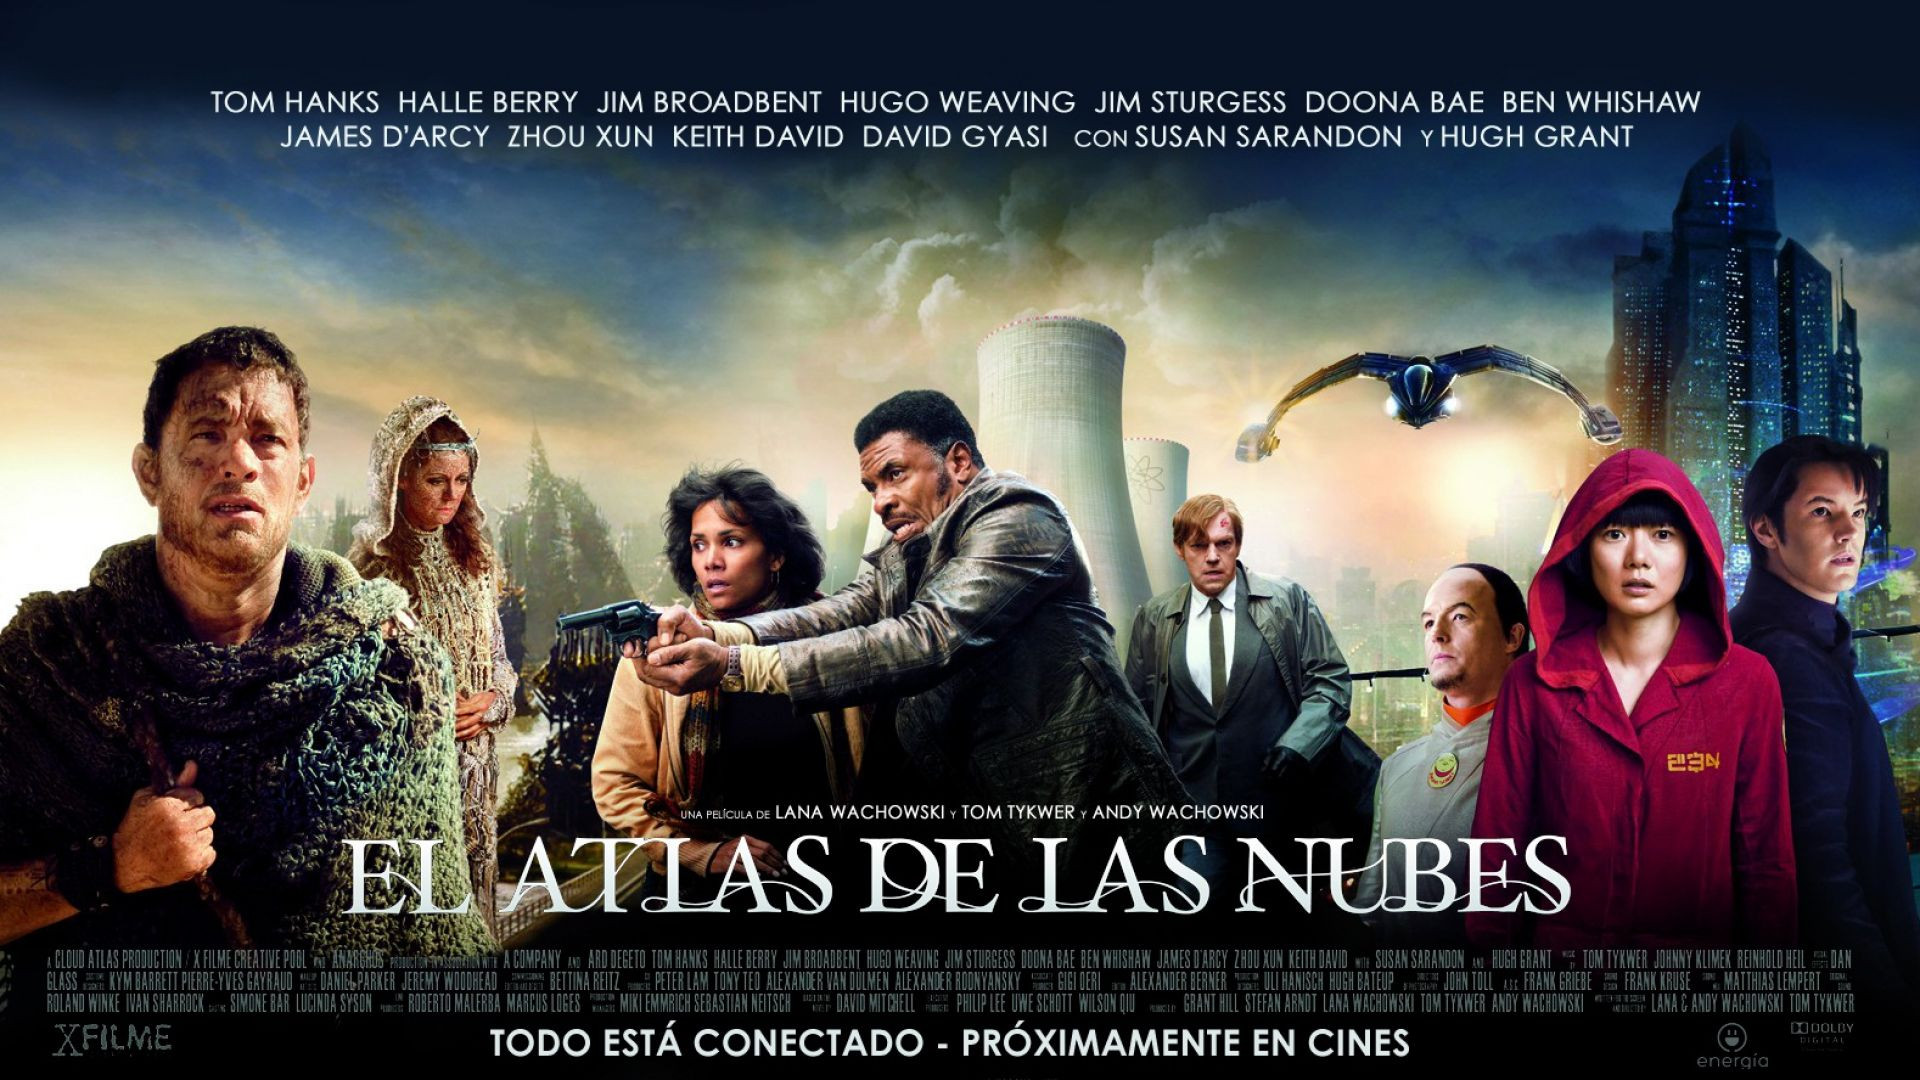 TRAILER  El Atlas de las Nubes (2012) cas. + LINK